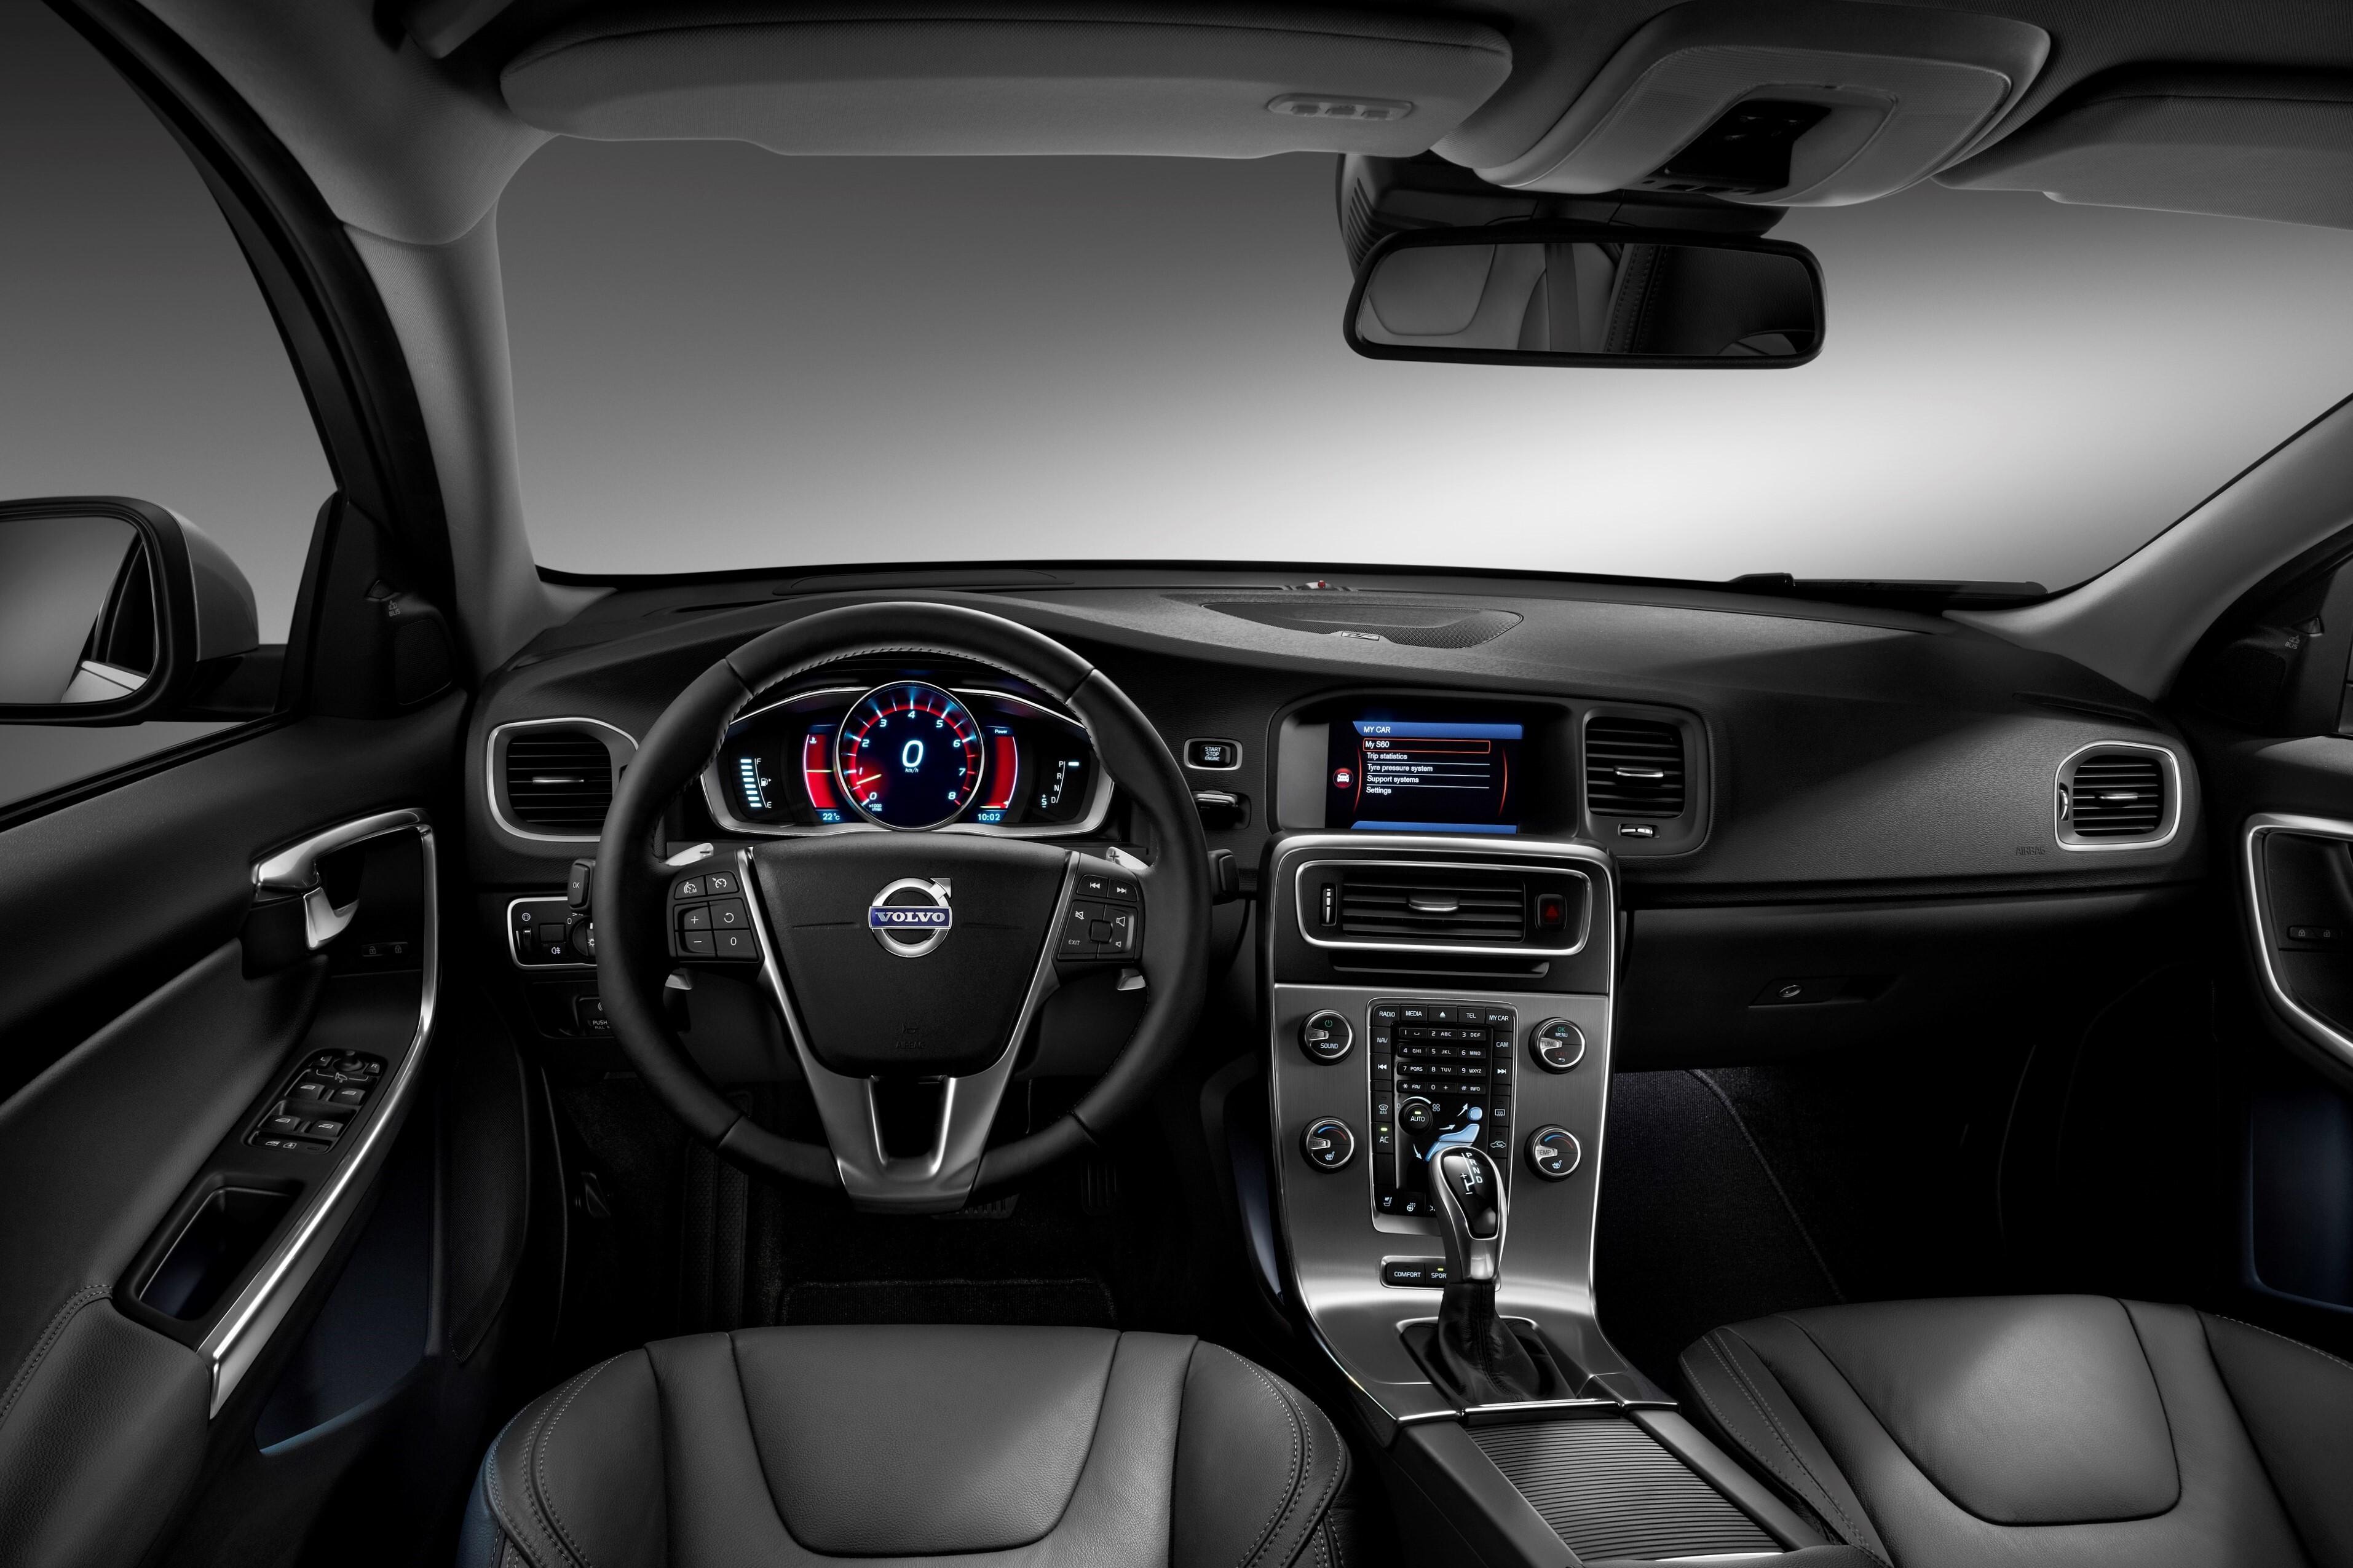 Volvo s60 1.6. Volvo s60 Interior. Volvo s60 II 2013. Volvo s60 2013 салон. Volvo s60 2014 салон.